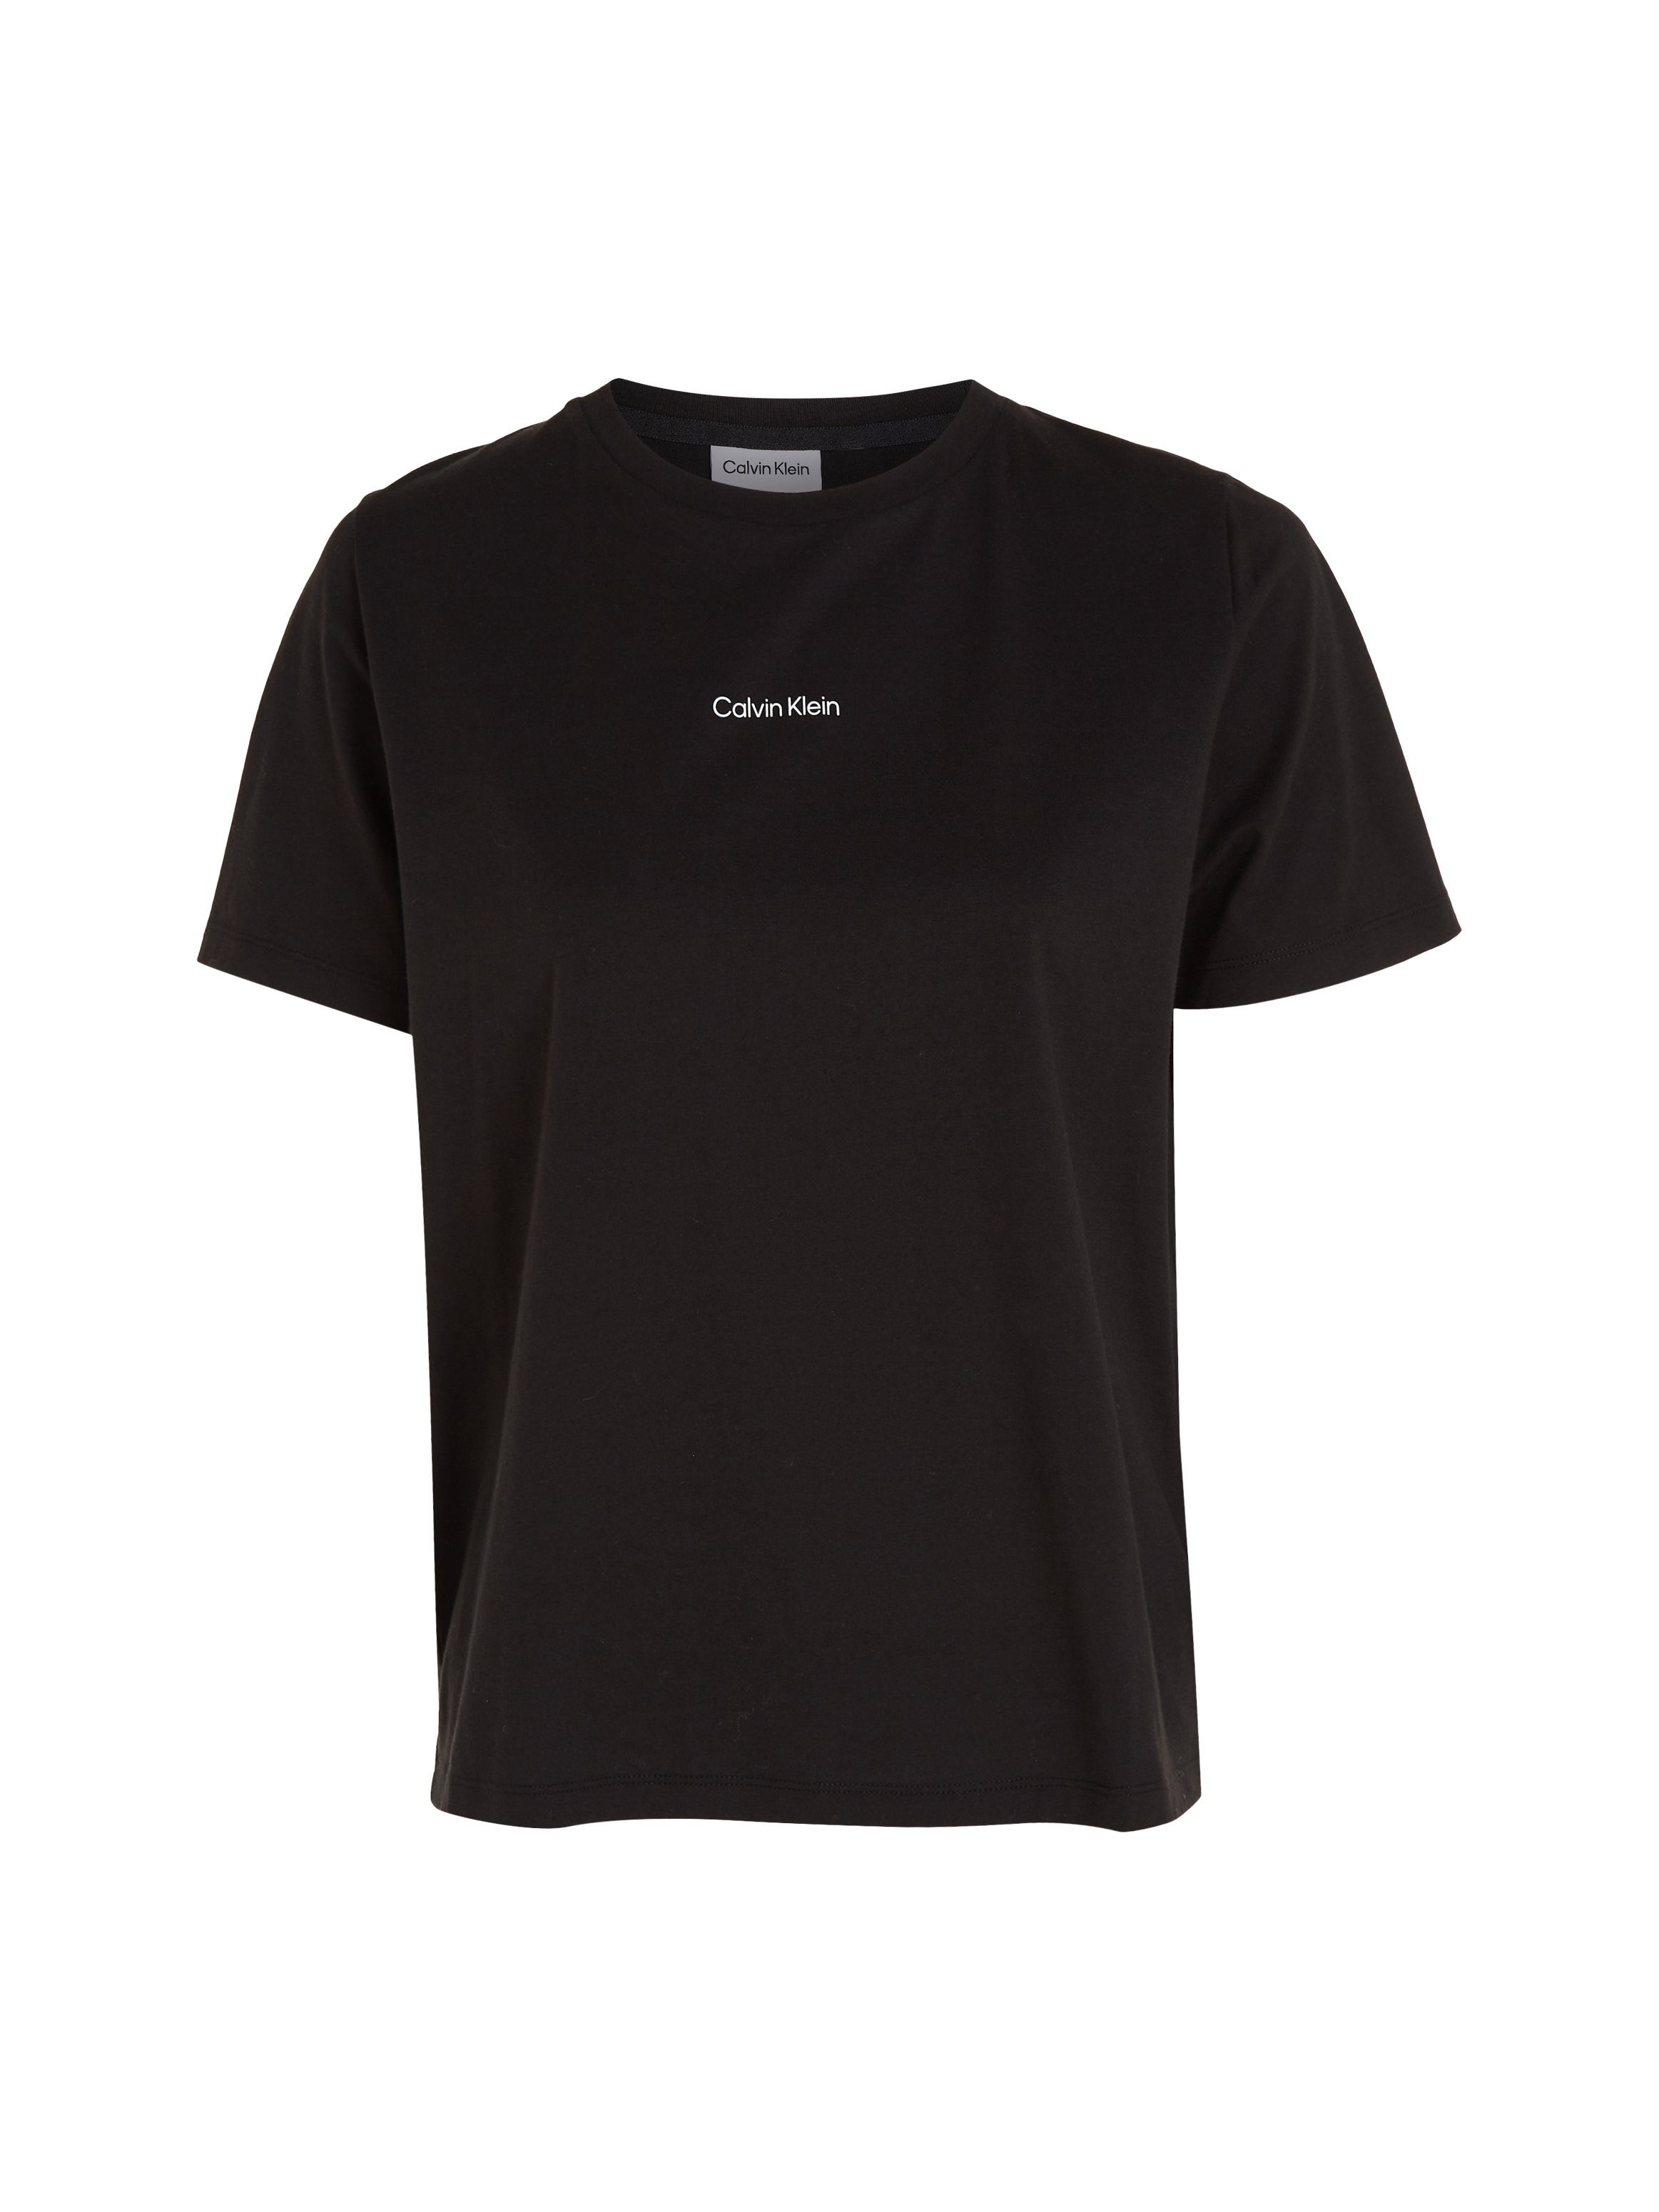 Calvin Klein T-Shirt MICRO LOGO aus T-SHIRT Baumwolle Ck-Black reiner